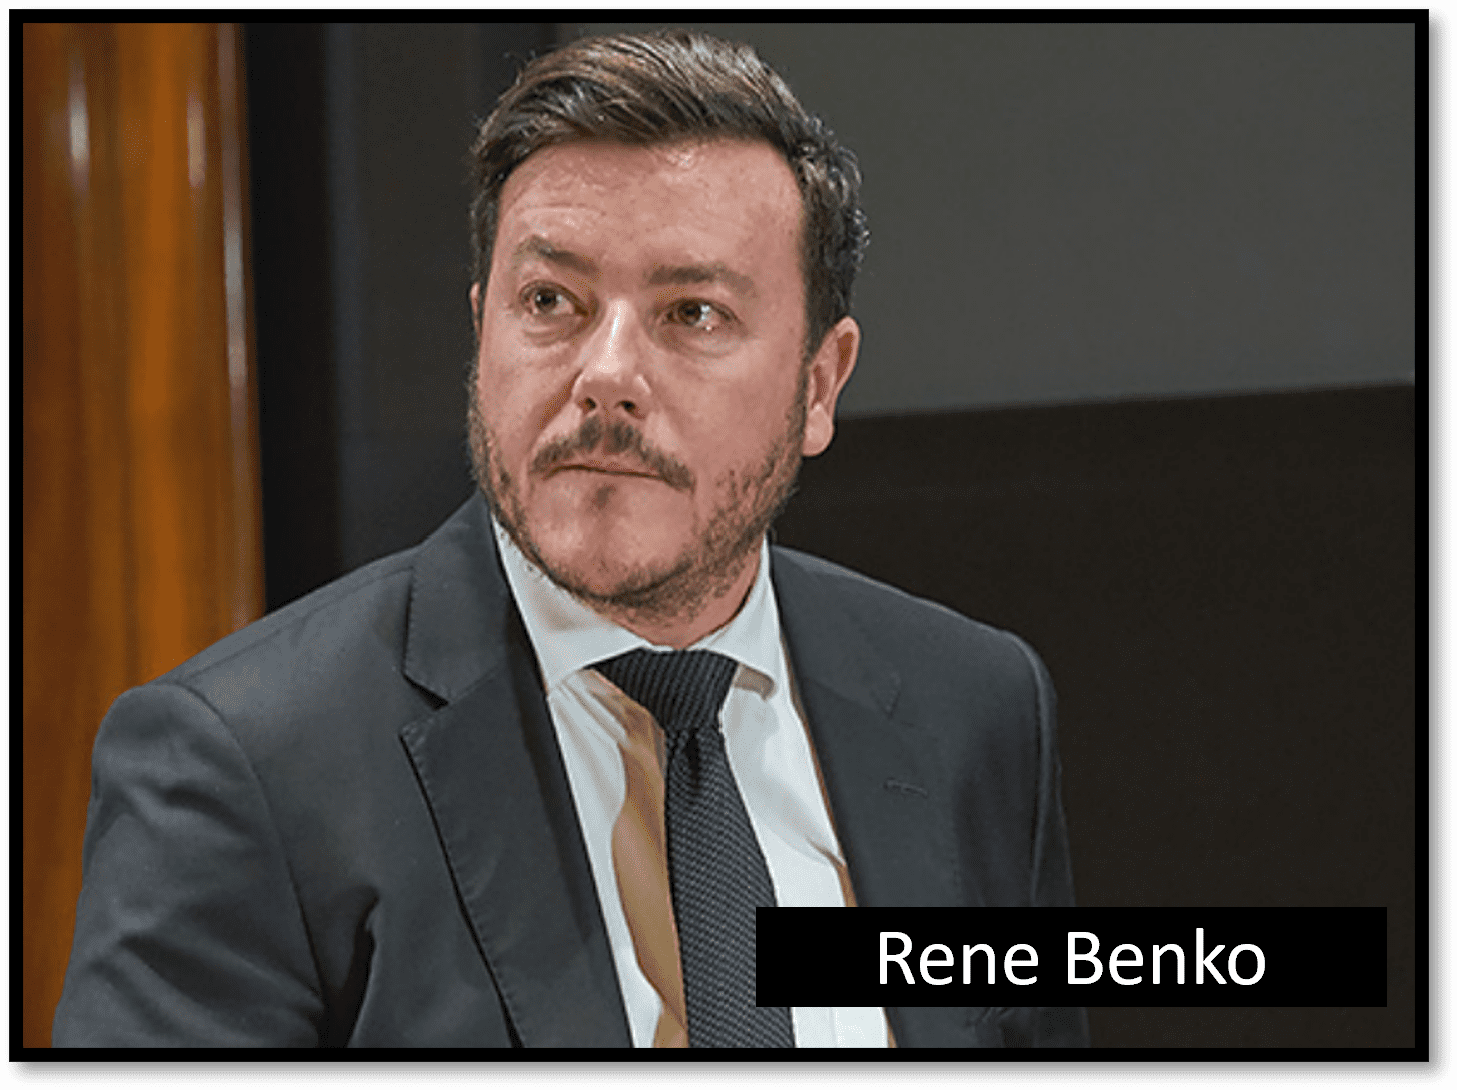 Deutsche Bank cuts ties to Austrian Rene Benko